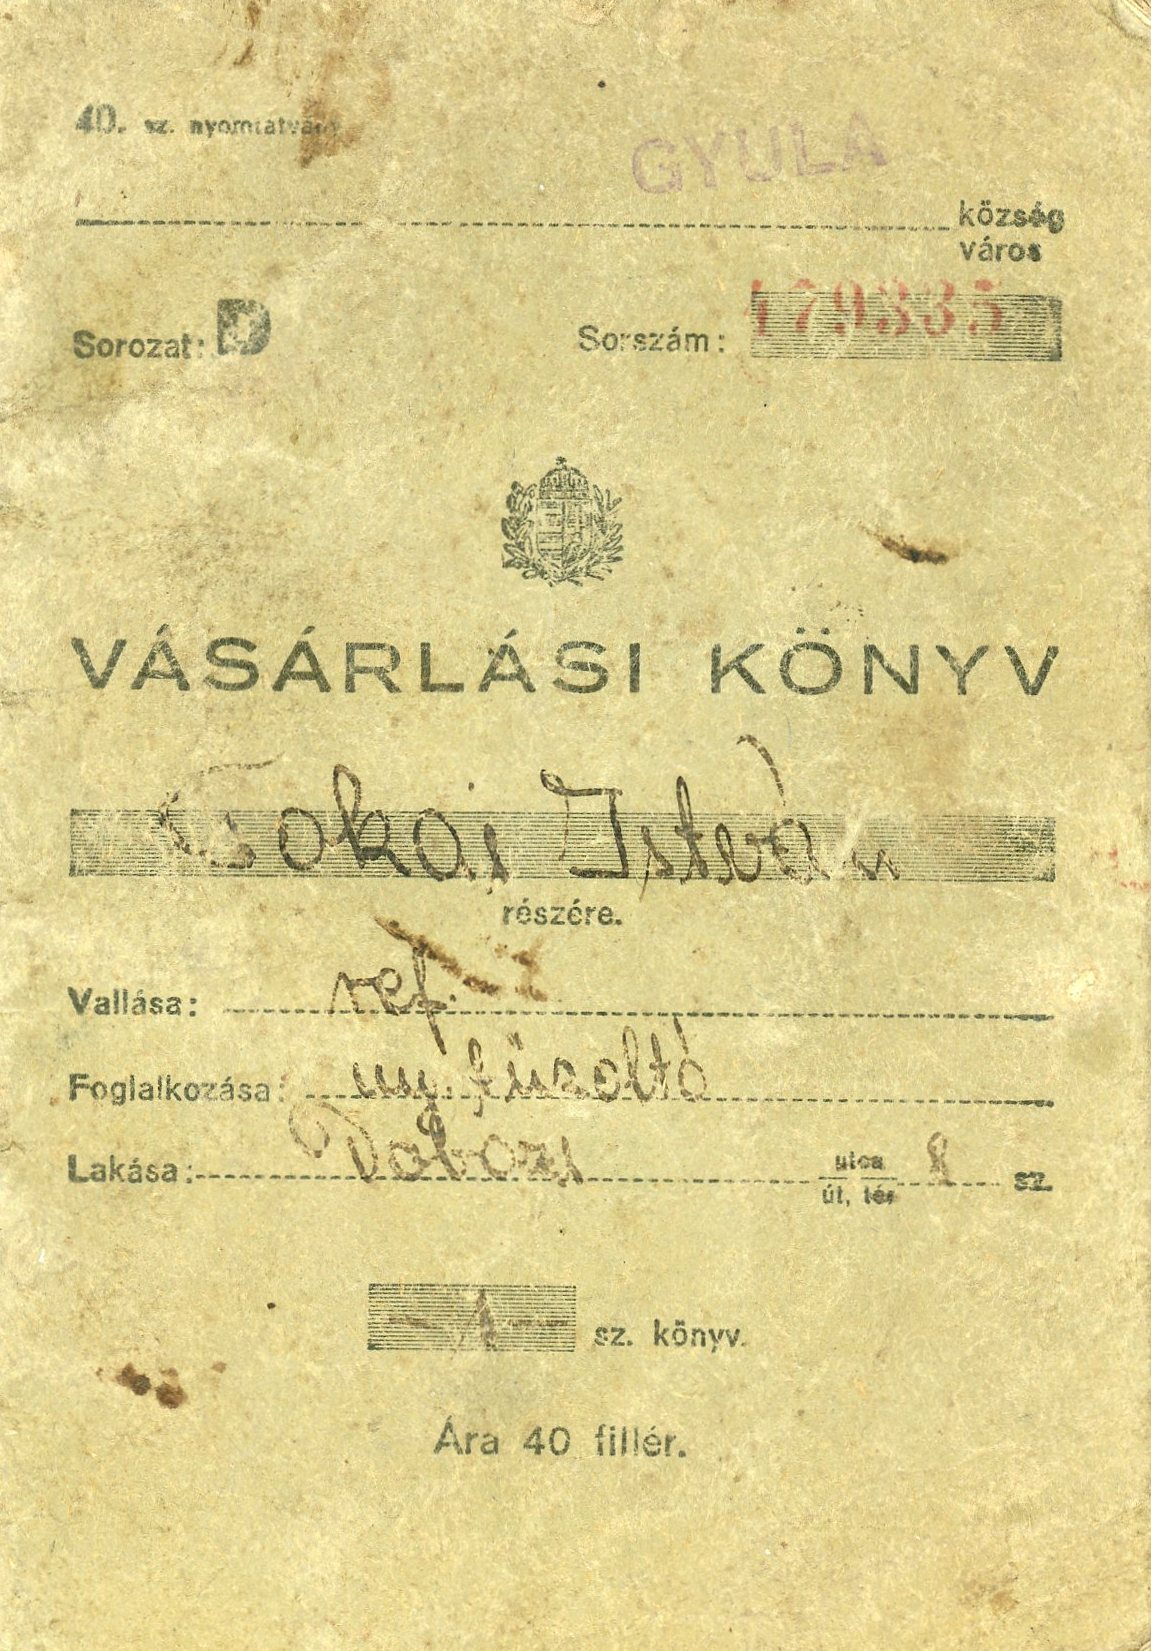 Vásárlási könyv, nyomtatott, kiállítva (Erkel Ferenc Múzeum CC BY-NC-SA)